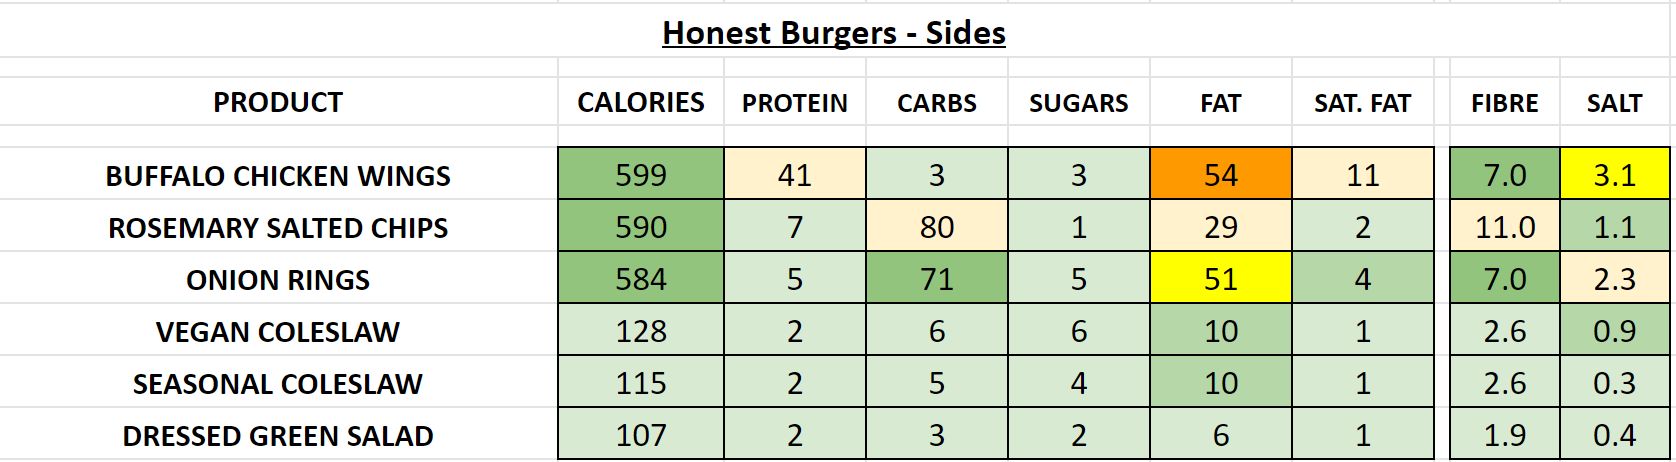 honest burgers nutrition information calories